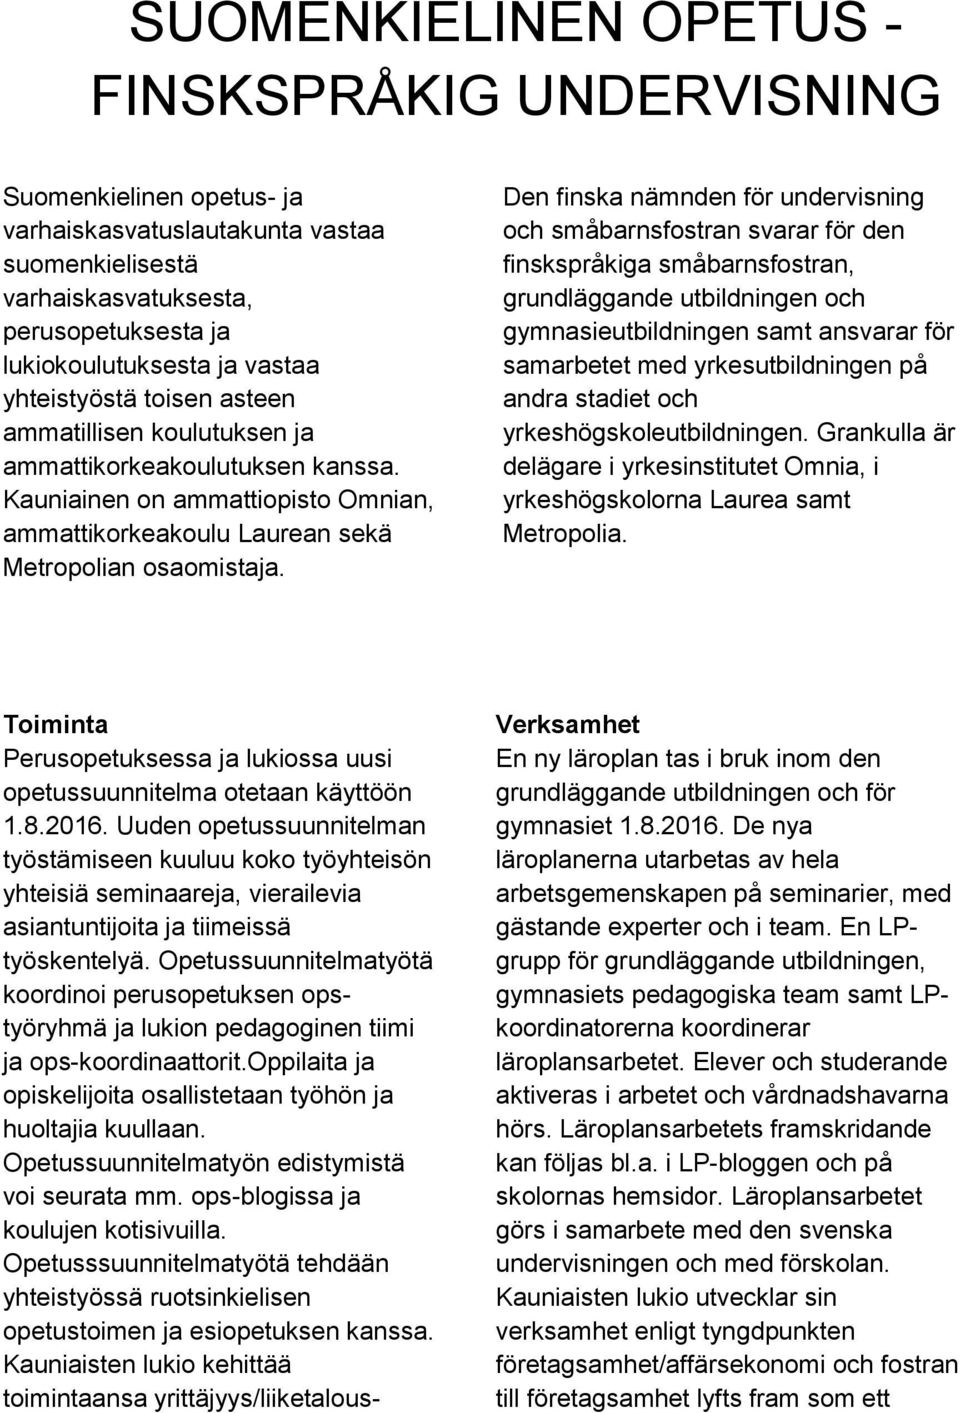 Den finska nämnden för undervisning och småbarnsfostran svarar för den finskspråkiga småbarnsfostran, grundläggande utbildningen och gymnasieutbildningen samt ansvarar för samarbetet med